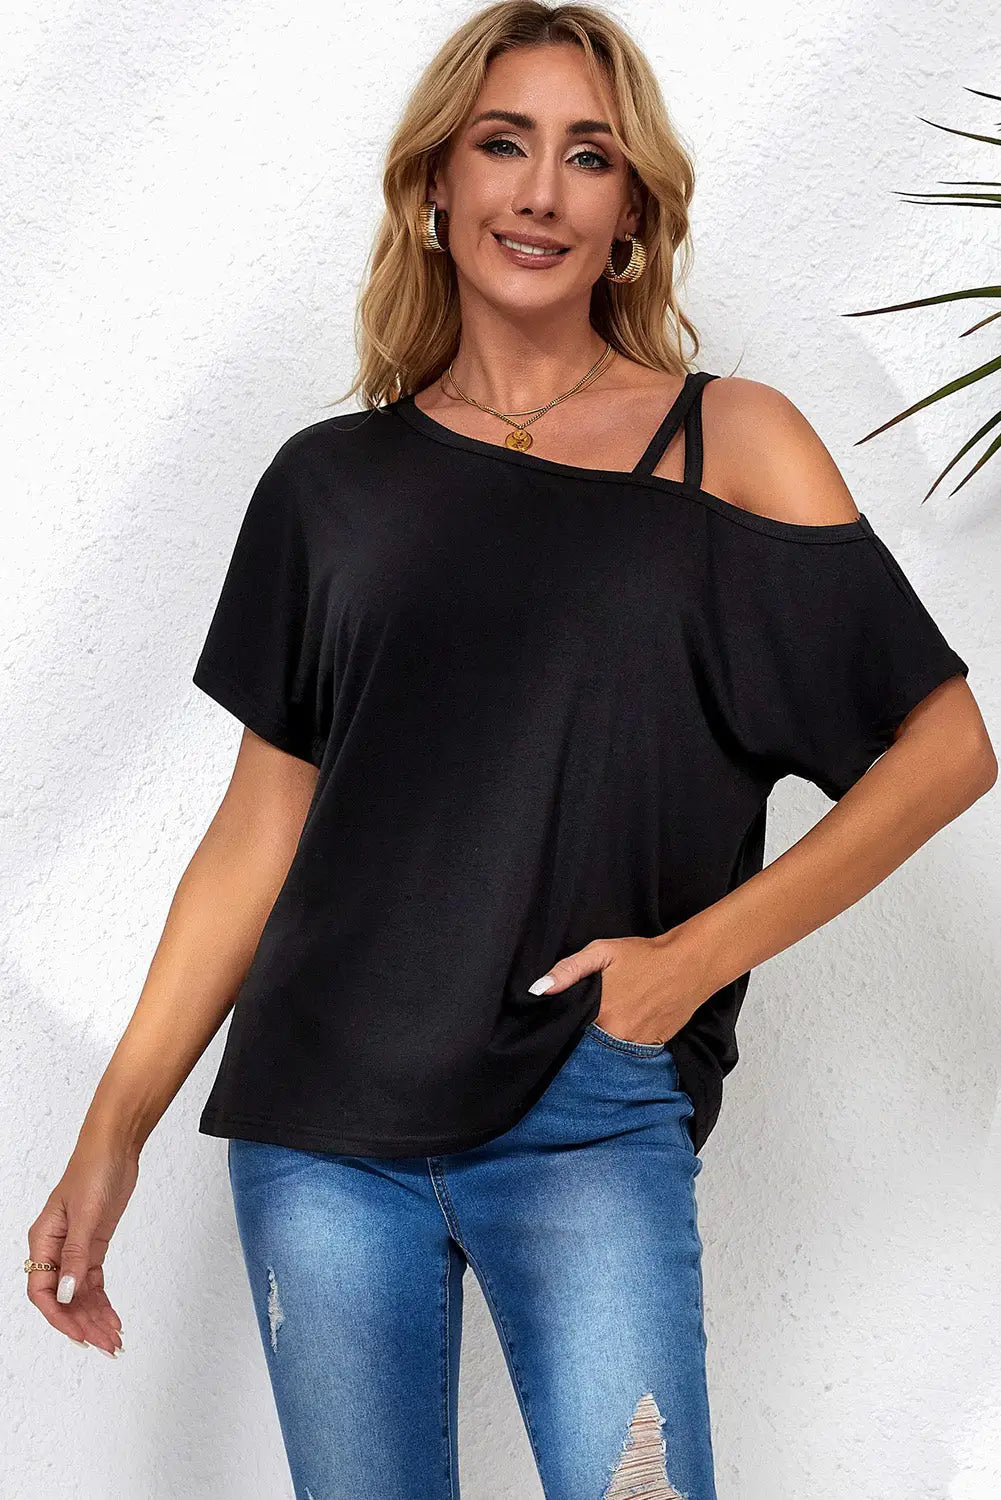 Black one shoulder long sleeve shift blouse - black1 / s / 65% polyester + 30% viscose + 5% elastane - tops